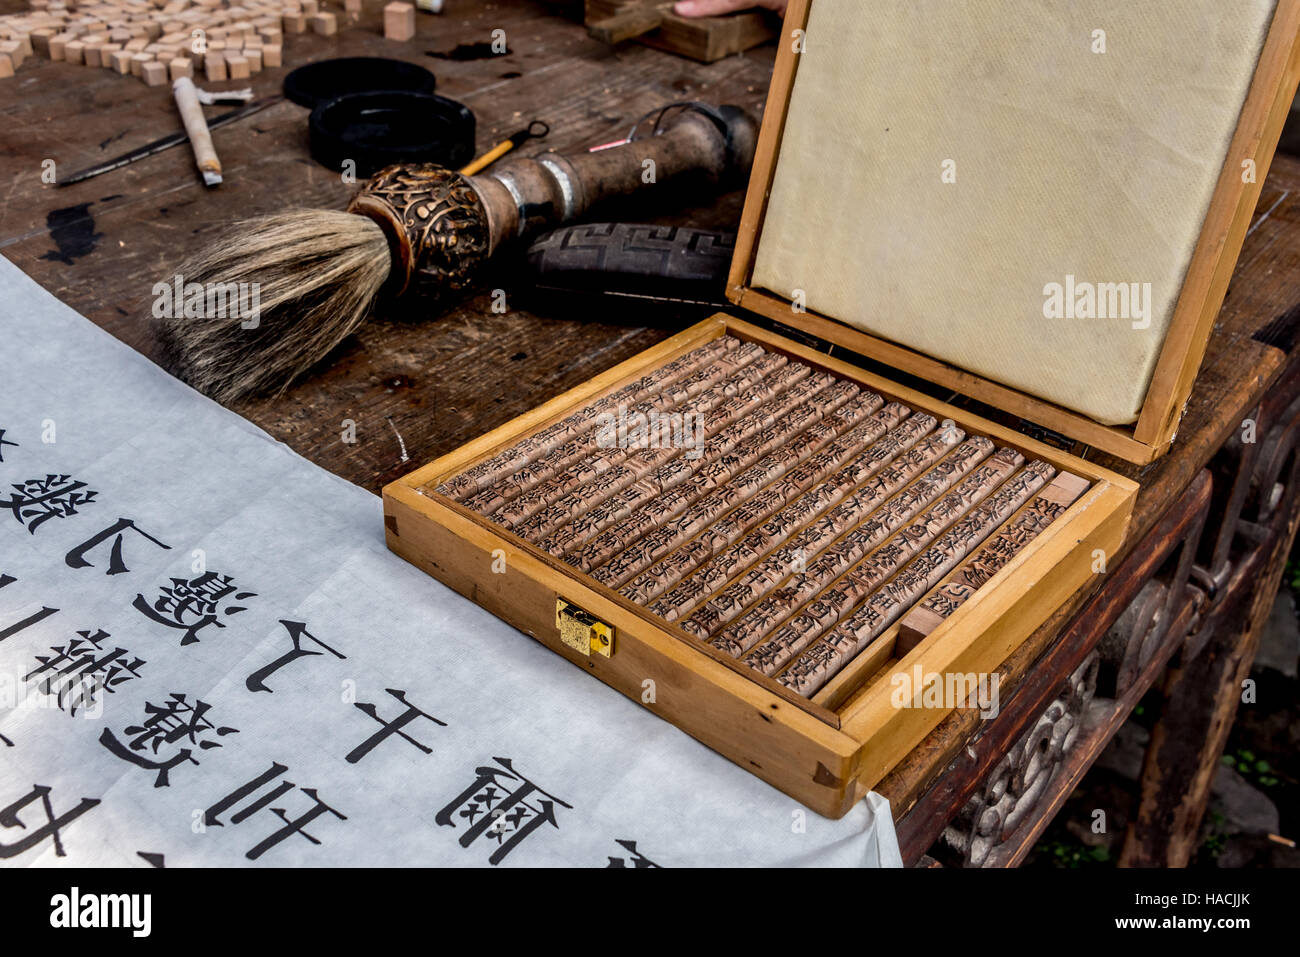 Scatola di scolpito a mano in legno di tipo mobile i caratteri cinesi usati per stampare una genealogia della famiglia al villaggio Dongyuan, Ruian, Cina. Foto Stock